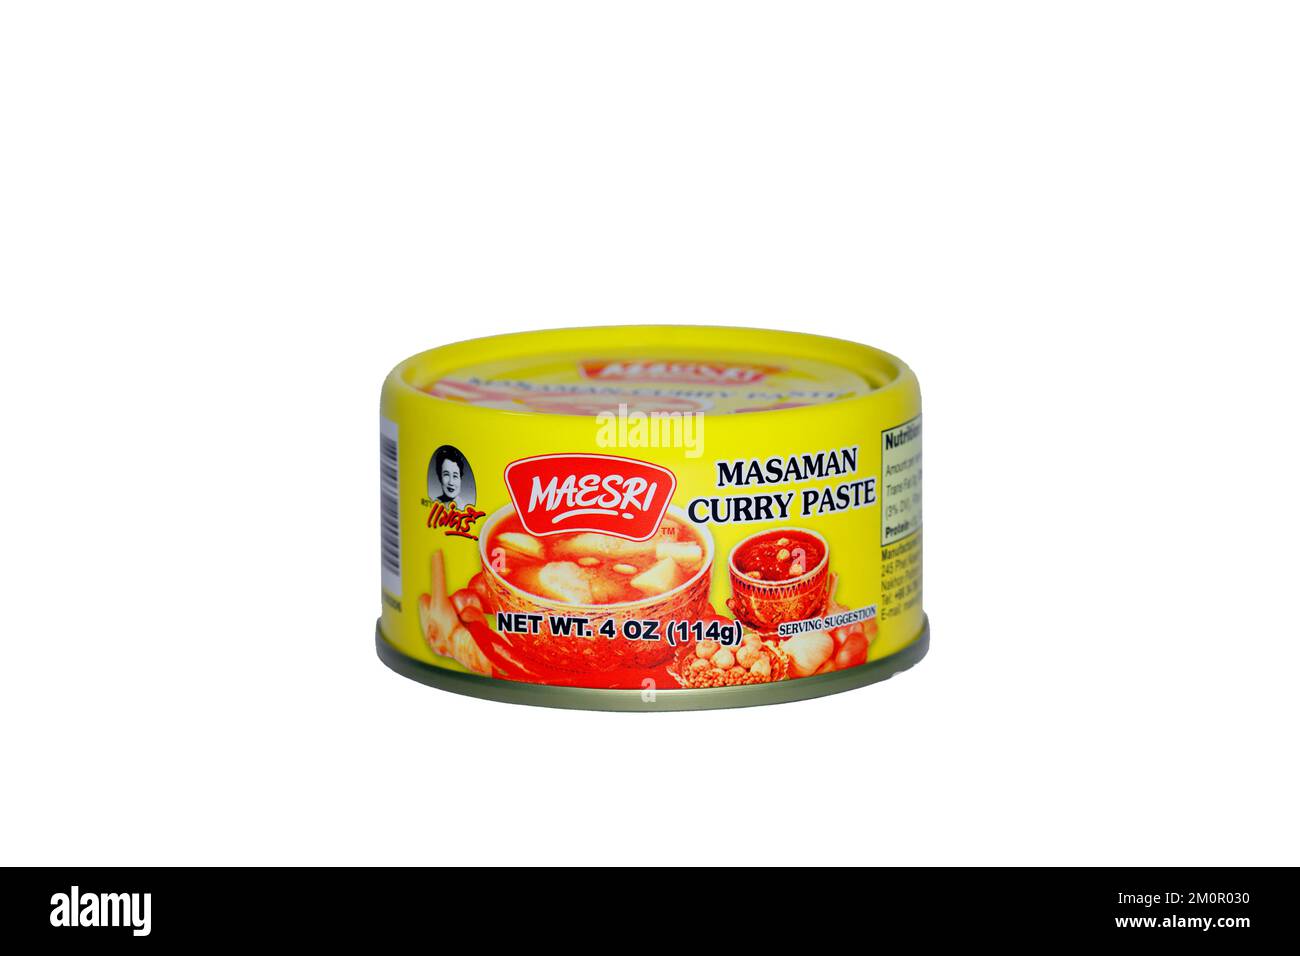 Una lattina di pasta di curry Masaman Maesri pasta di curry tailandese isolato su uno sfondo bianco. immagine ritagliata per uso illustrativo ed editoriale. Foto Stock